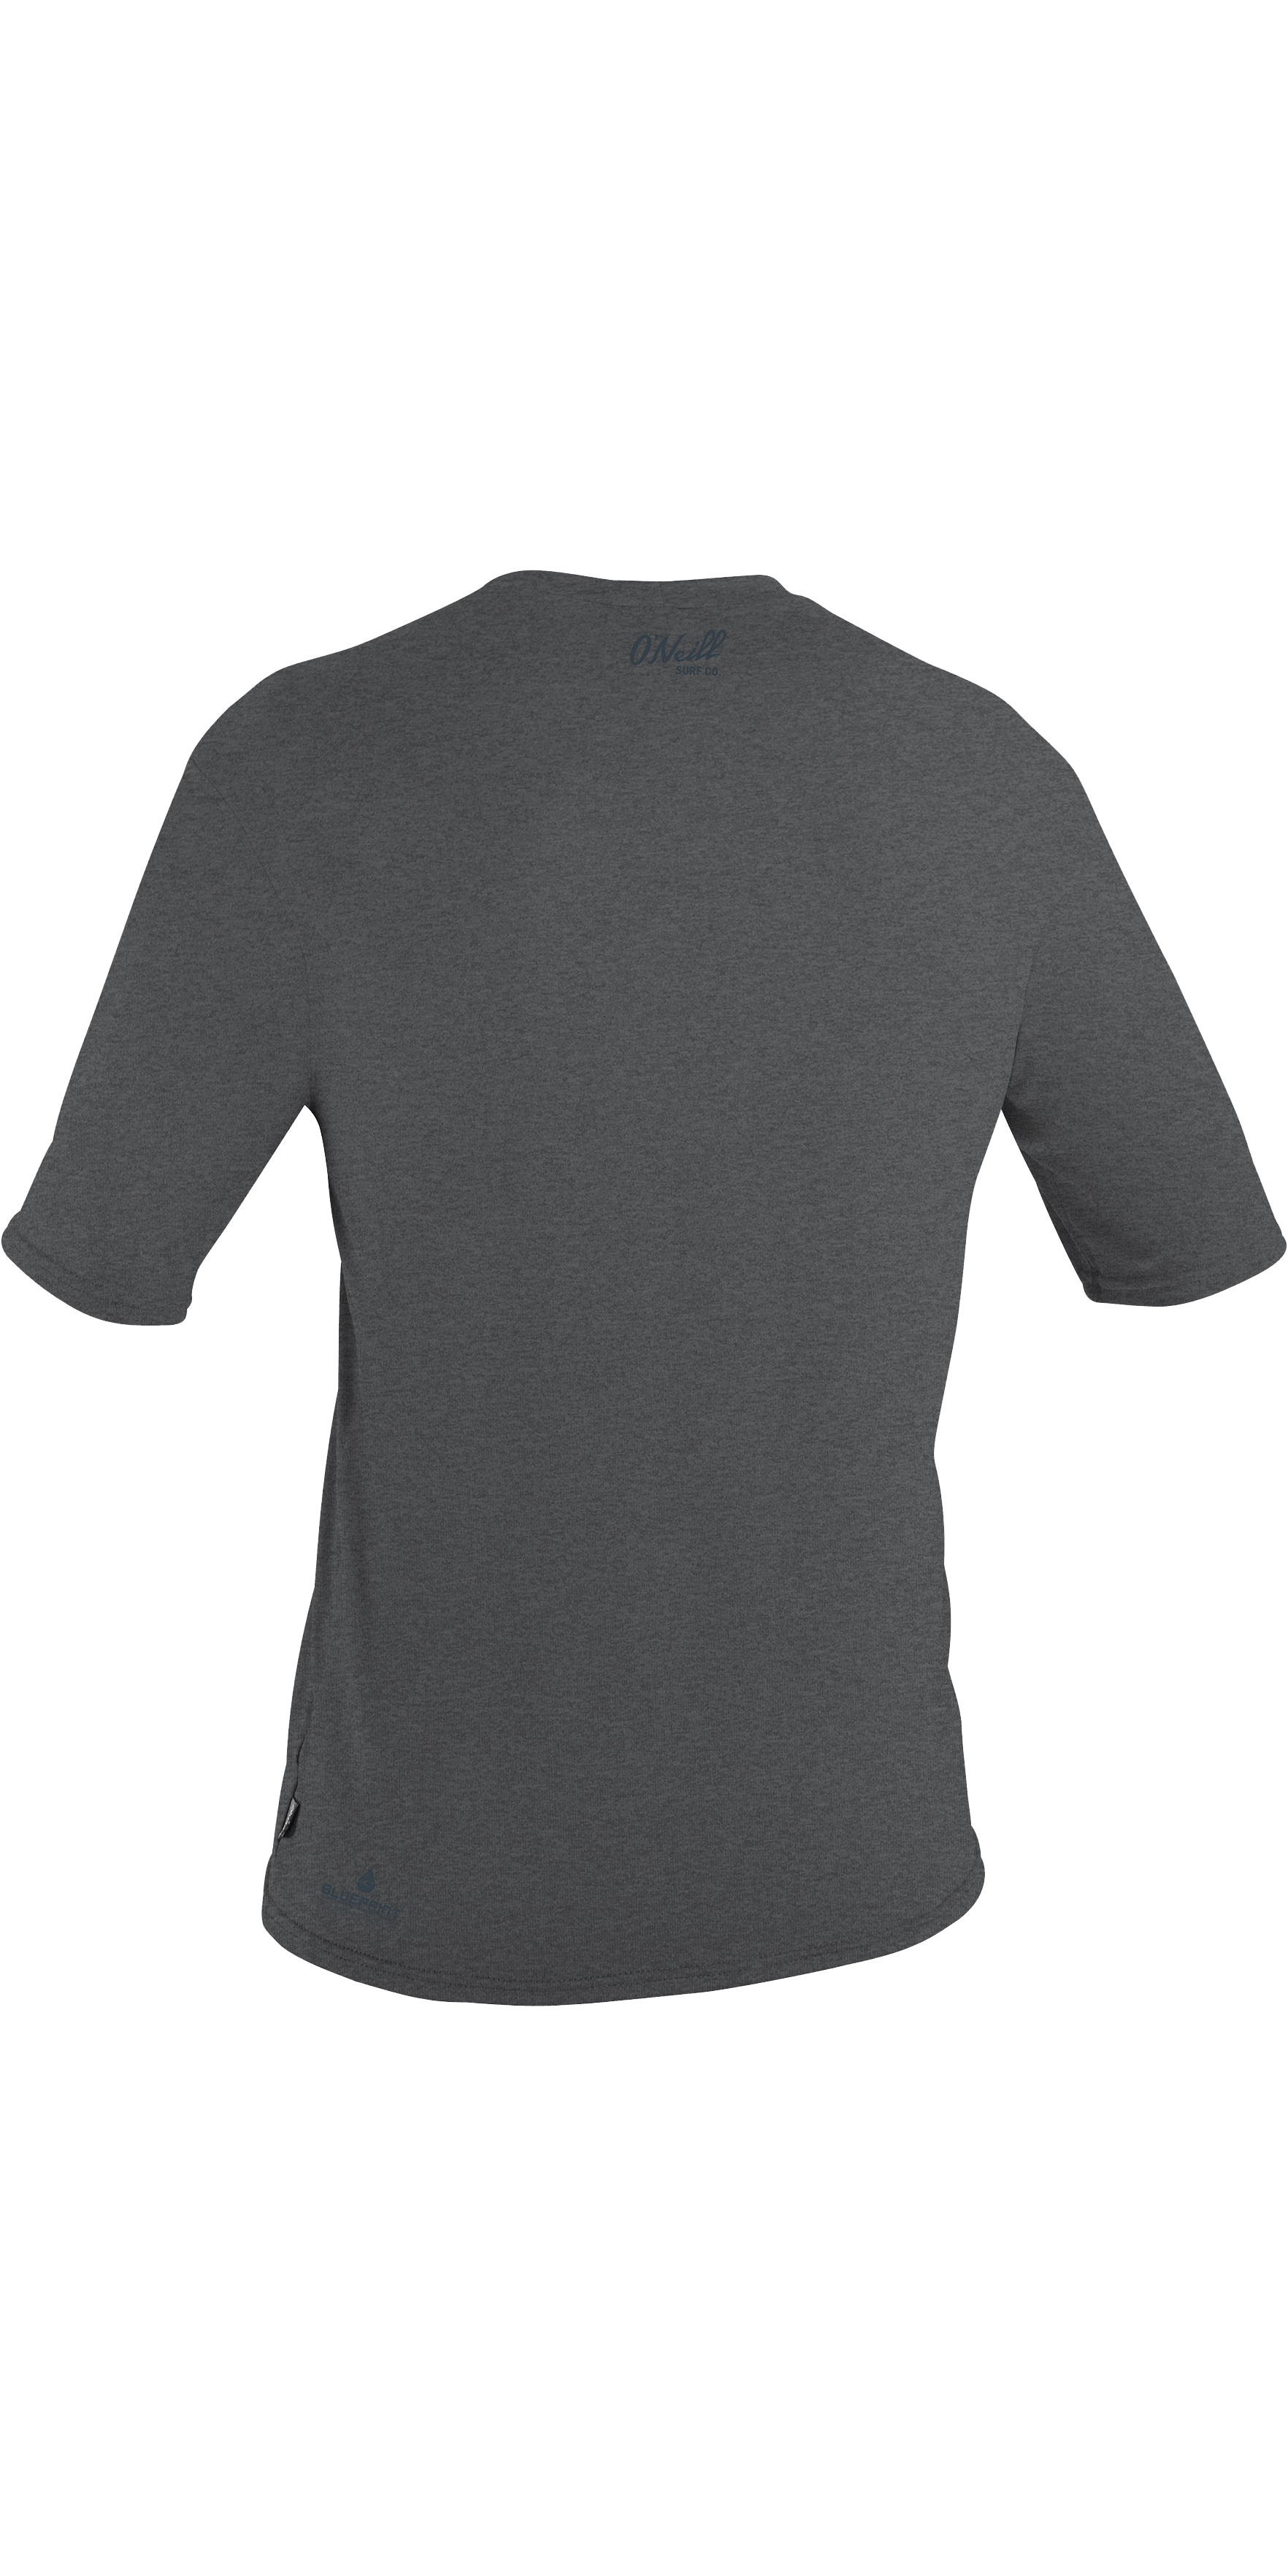 O'Neill Blueprint Short Sleeve Sun Shirt - Smoke